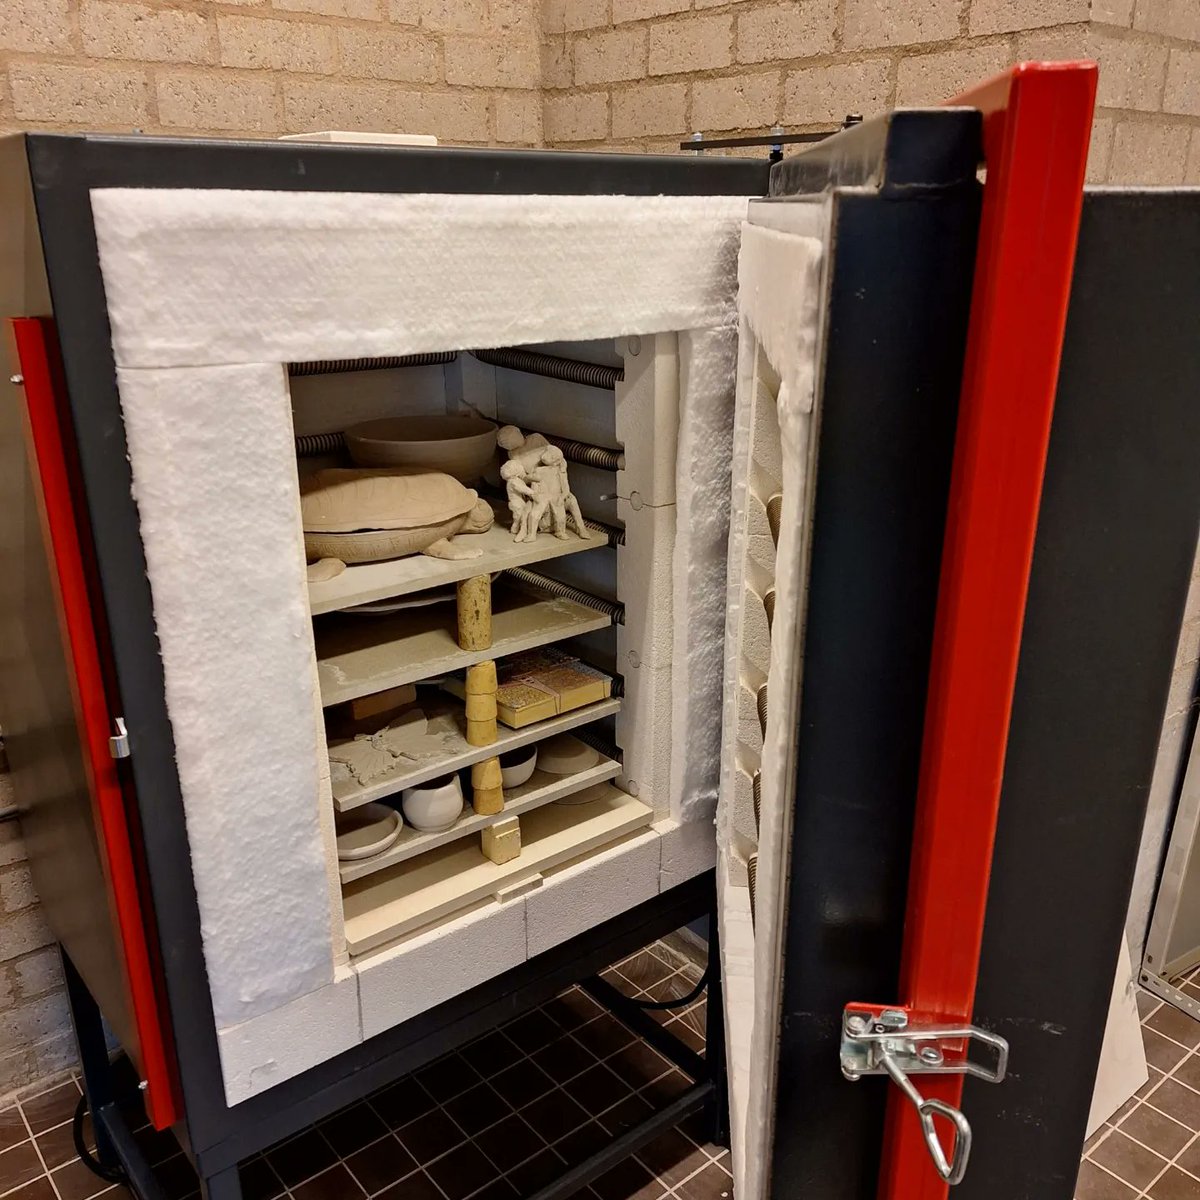 Afgelopen week is er een nieuwe oven geleverd voor onze keramiekgroep 🥳🥳🥳 Na 40 jaar trouwe dienst was het tijd voor een upgrade 💫. #keramiek #nieuweoven #creativiteit #upgrade #kubuslelystad